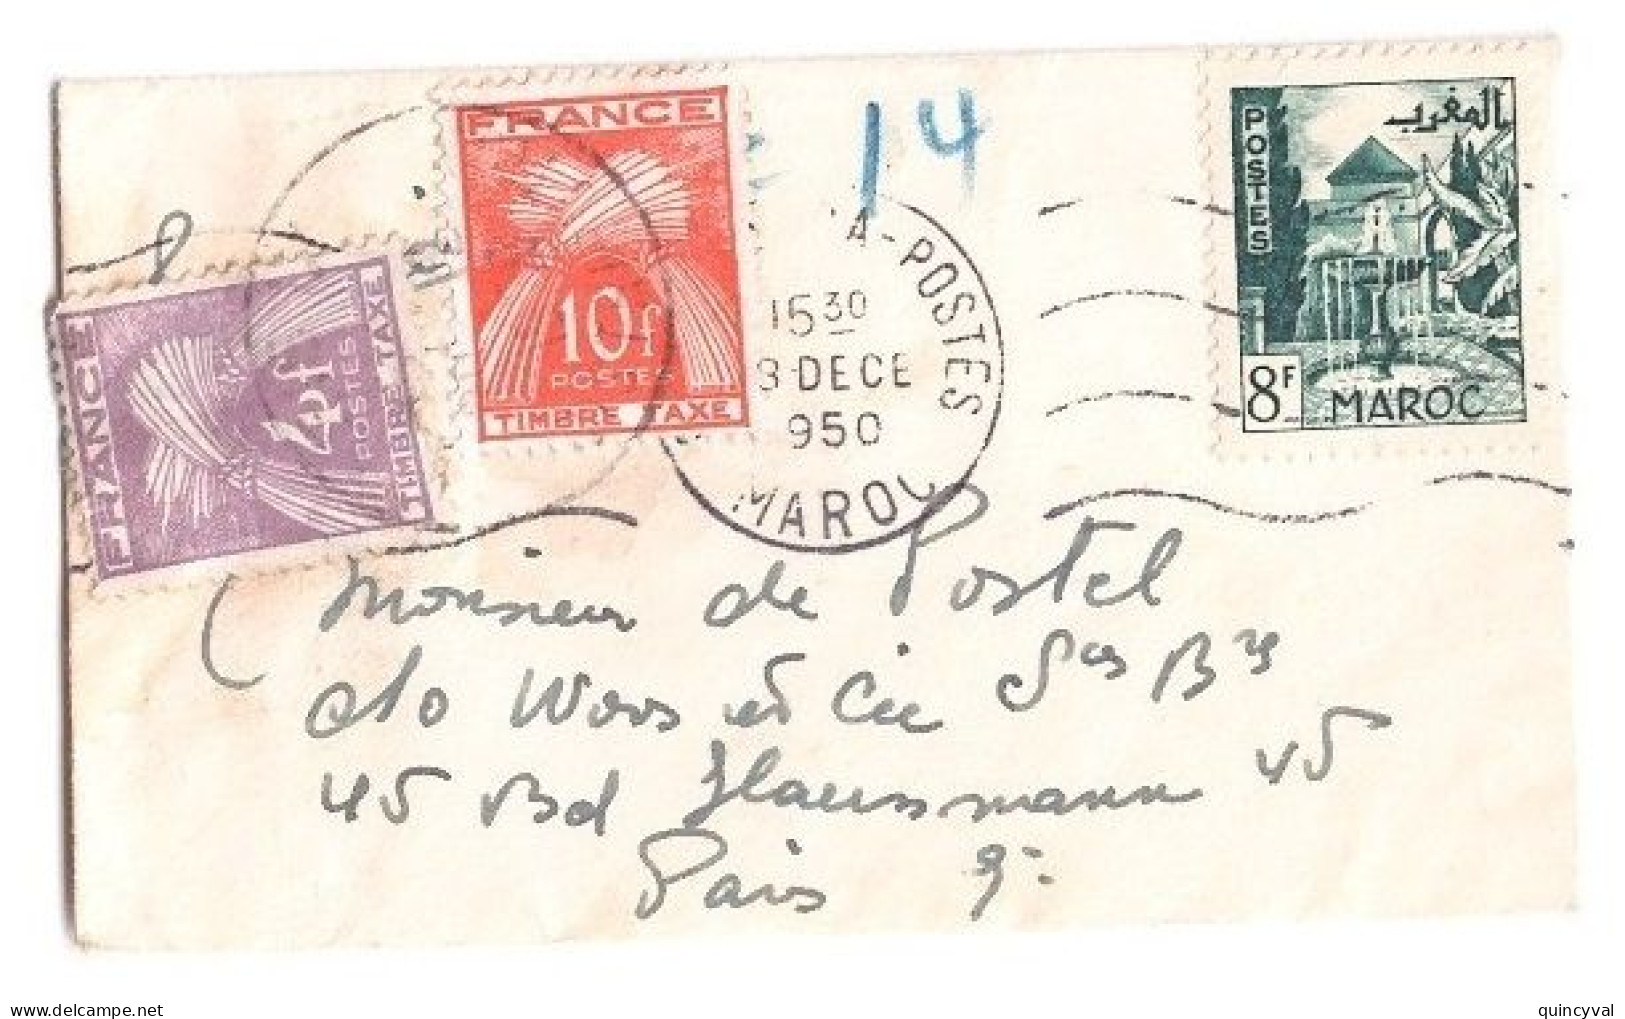 PARIS Carte De Visite Mignonnette Origine Maroc Affranchie 8 F Taxe 14 F Gerbes Yv T 86 84 Ob 1950 - 1859-1959 Storia Postale